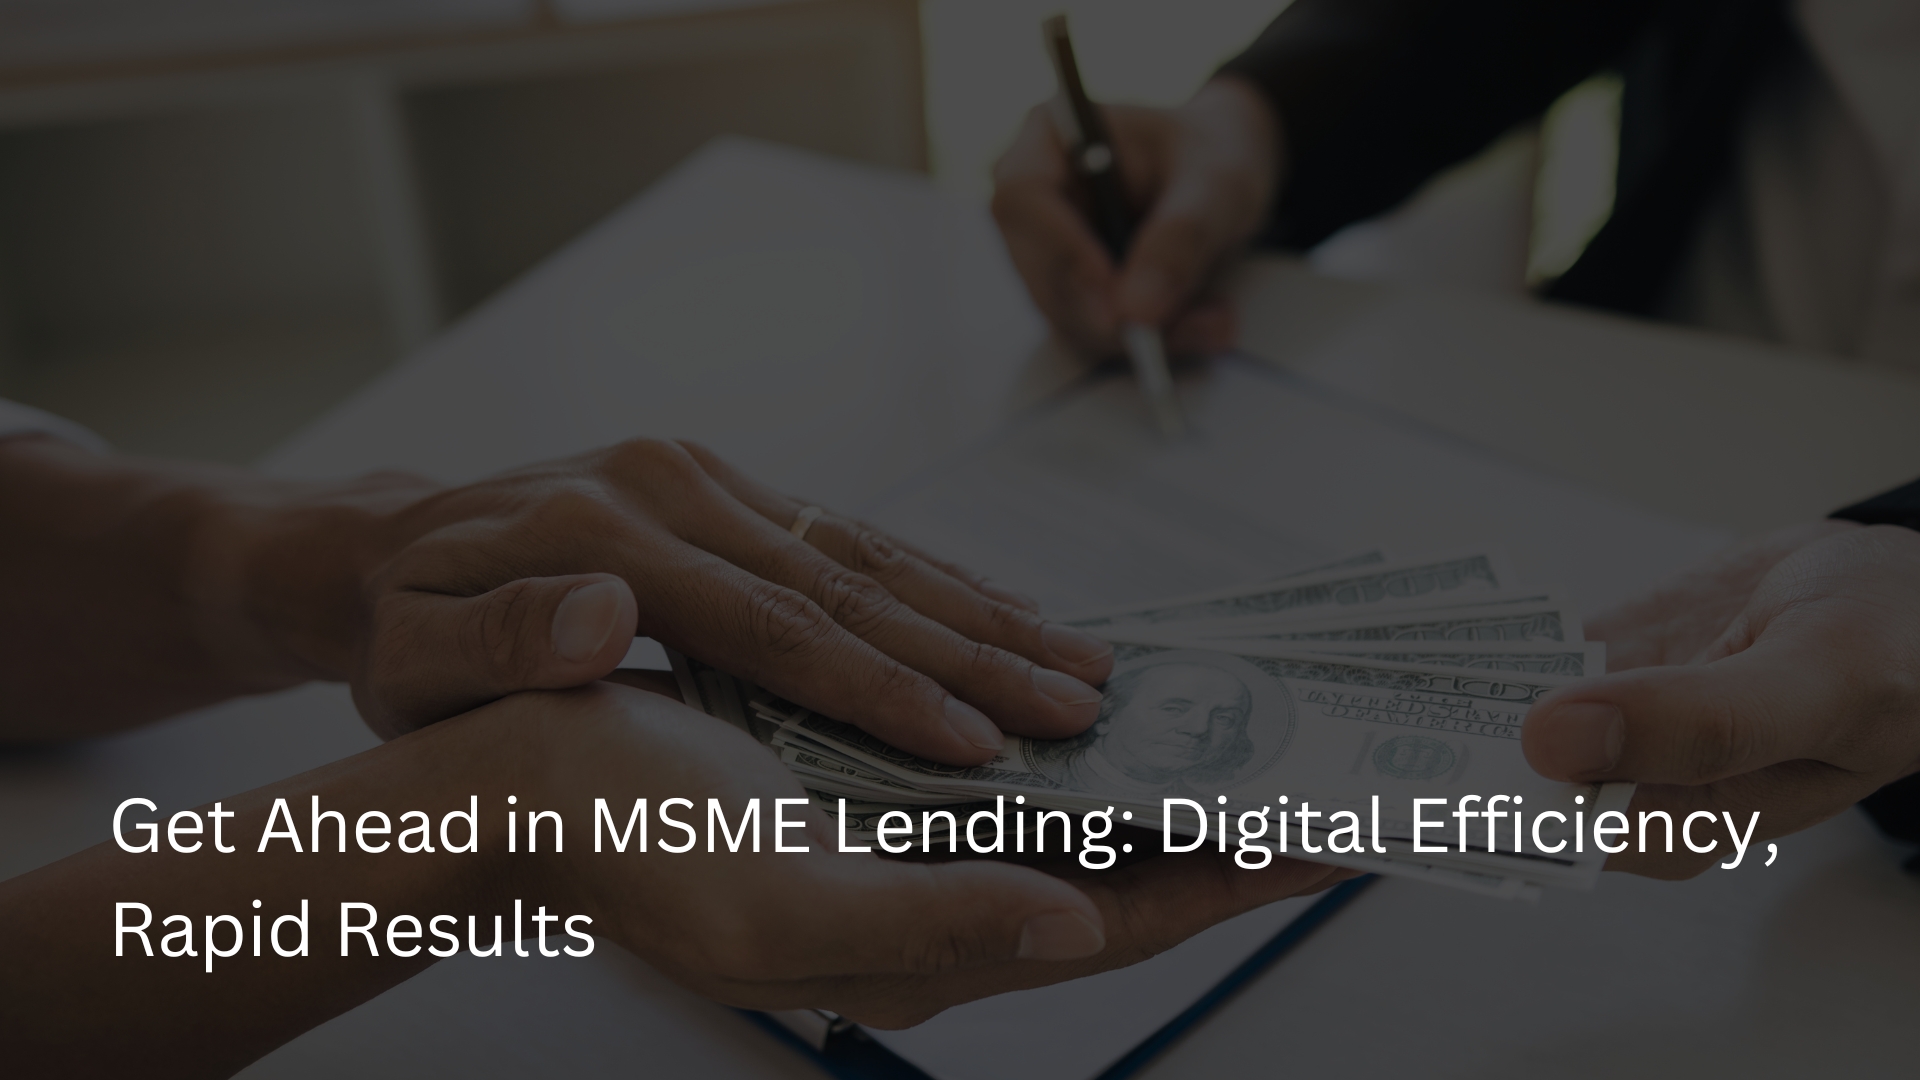 Get Ahead in MSME Lending Digital Efficiency, Rapid Results